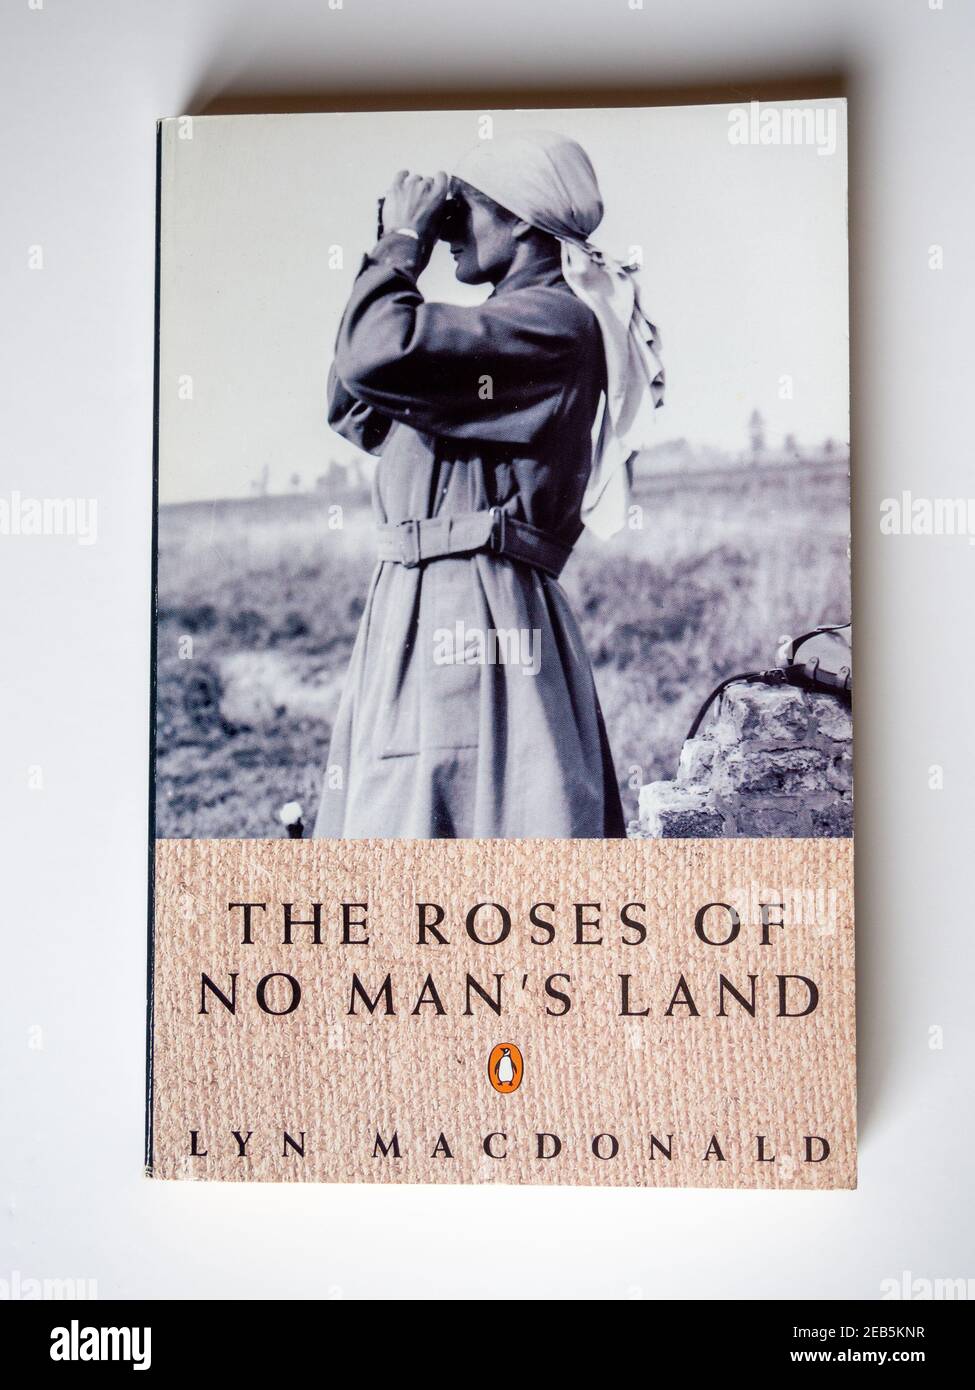 Foto del libro The Roses of No Man's Land, dell'autore e storico Lyn Macdonald; Penguin Books, 1980 Foto Stock